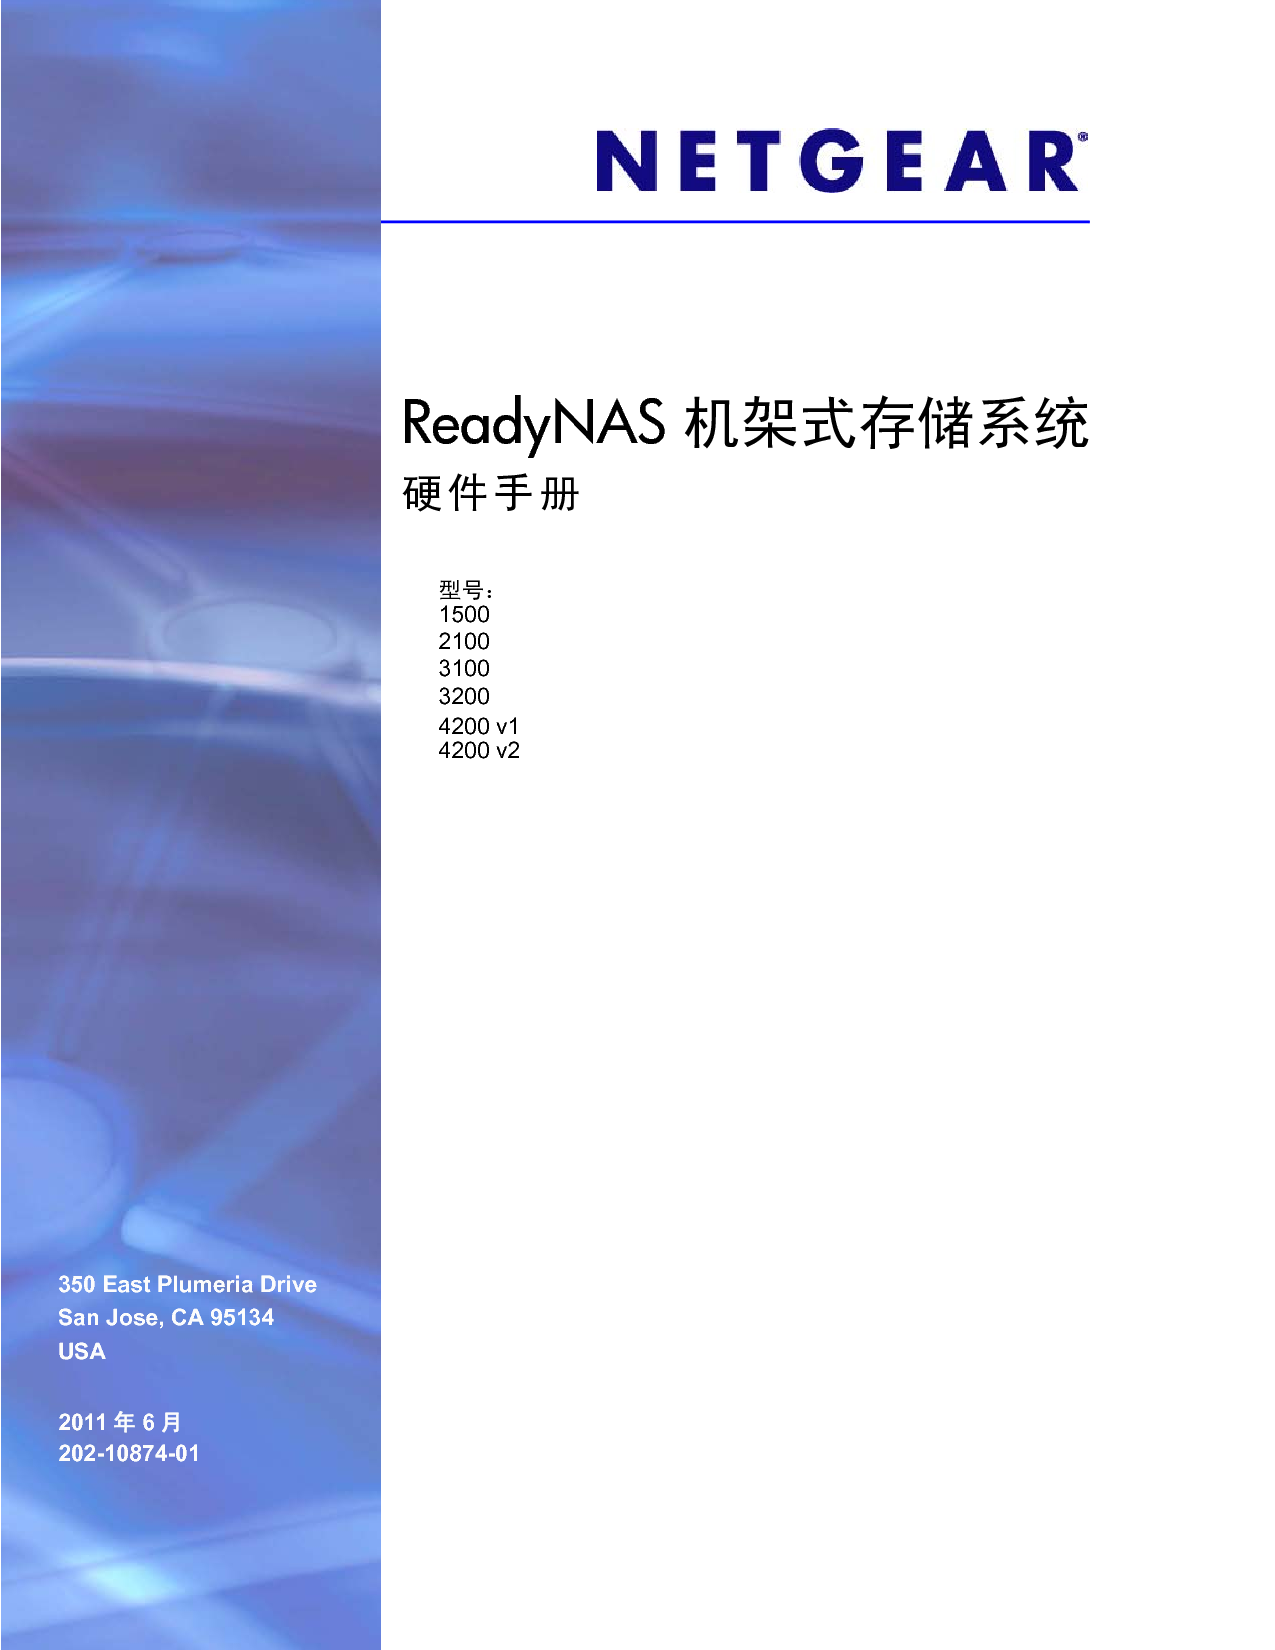 网件 Netgear ReadyNAS 1500 硬件手册 封面